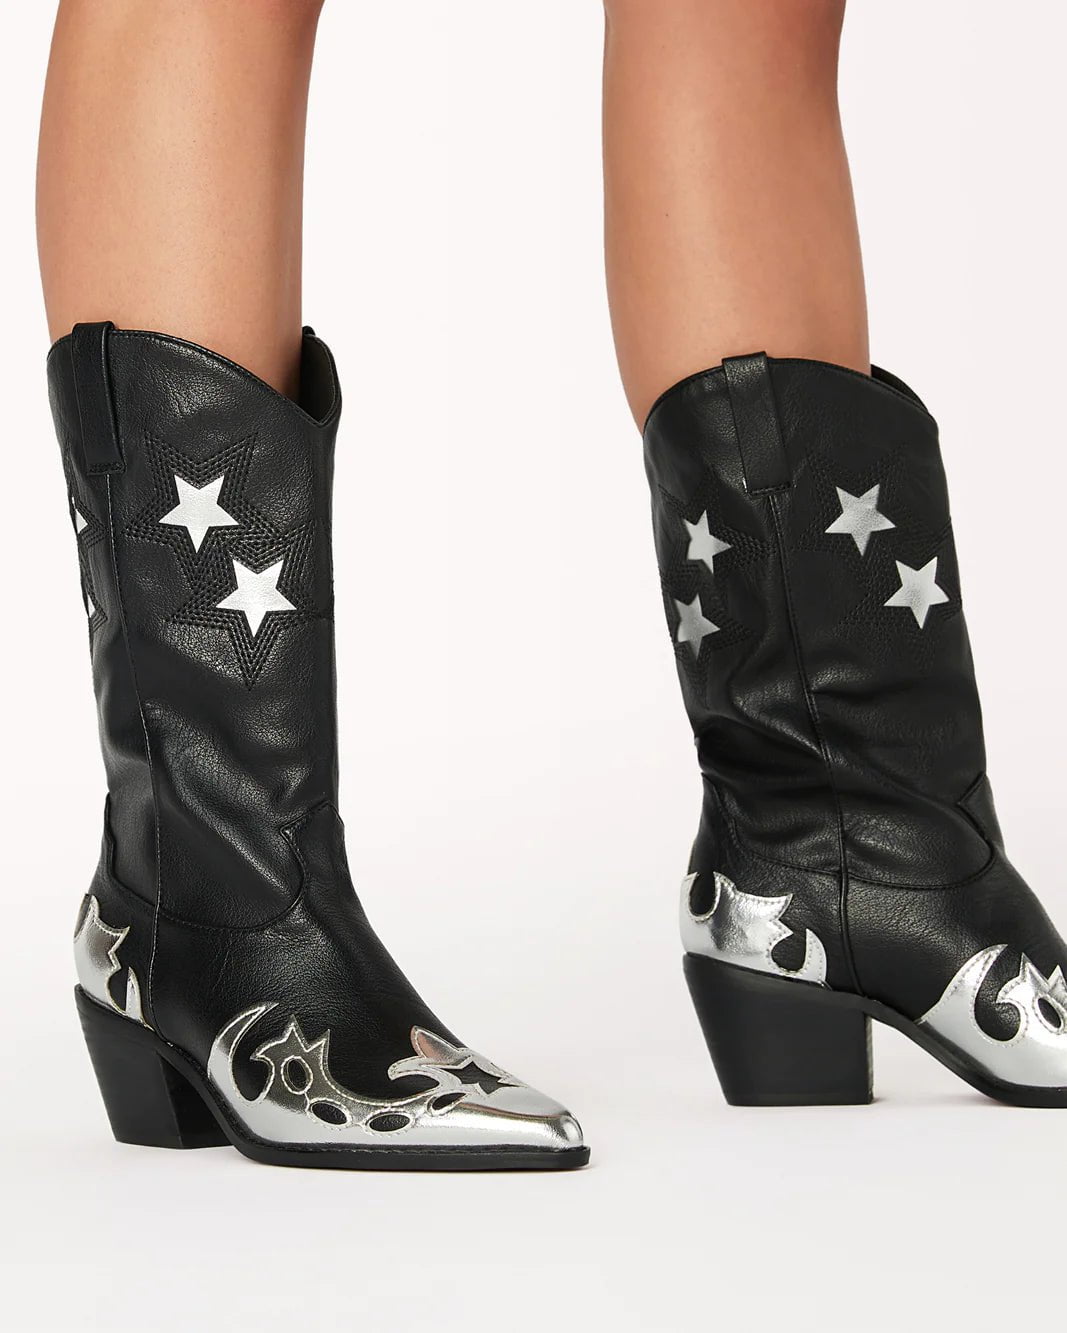 Nico Metallic Contrast Cowboy Boot Black/Silver, Shoes by Billini Shoes | LIT Boutique